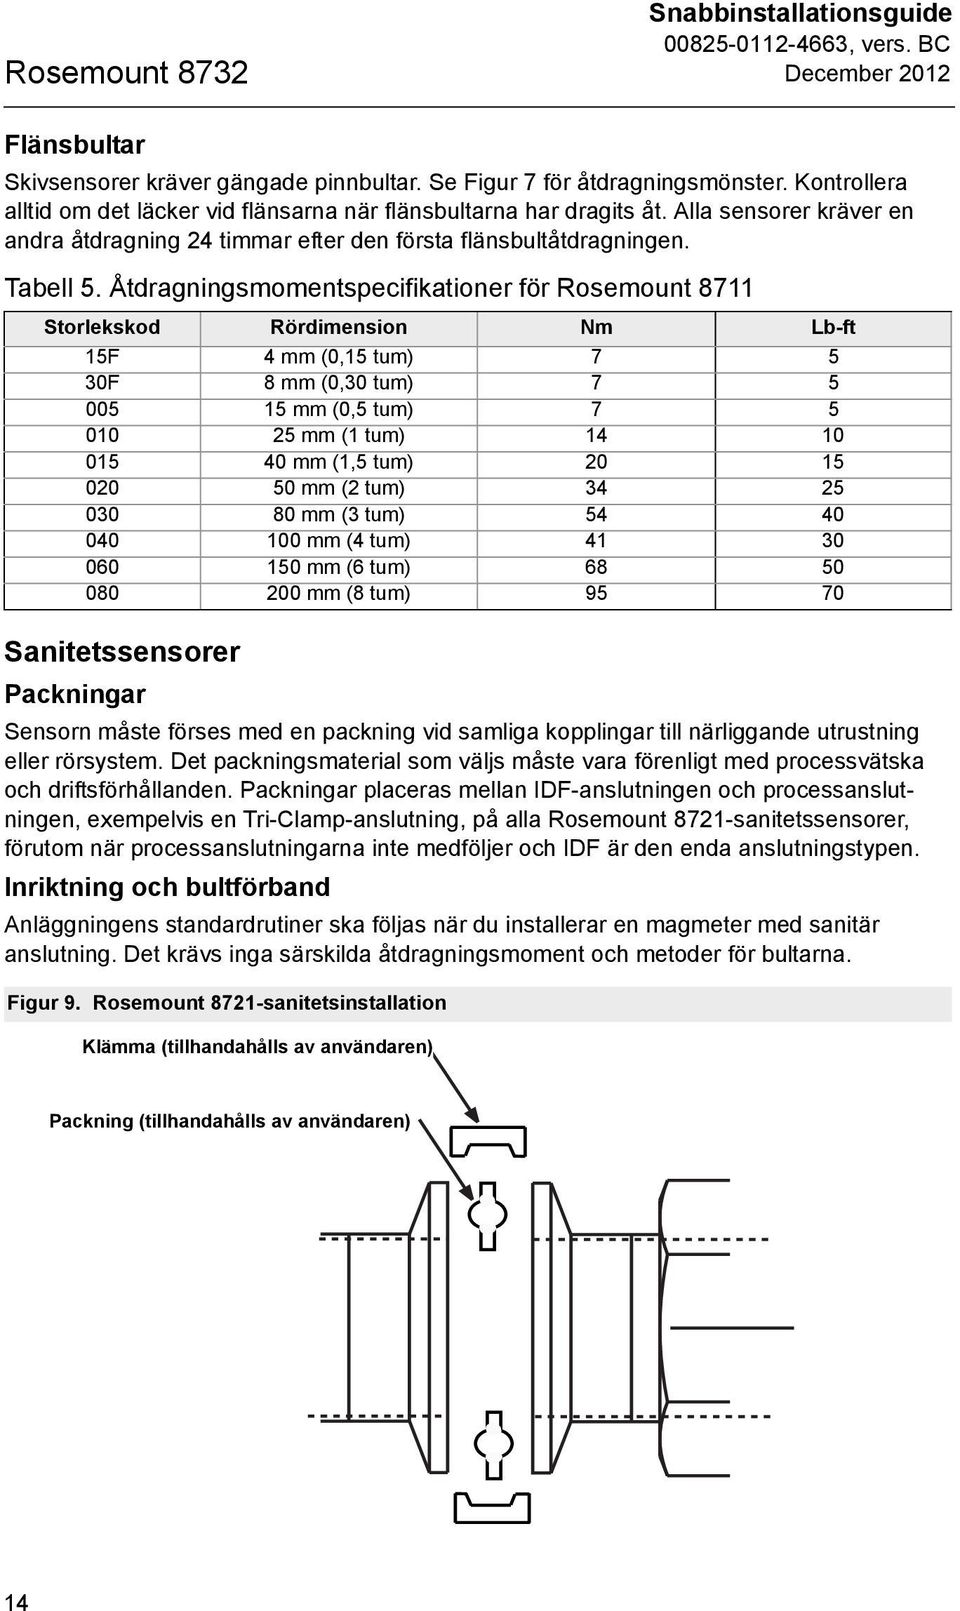 Åtdragningsmomentspecifikationer för Rosemount 8711 Storlekskod Rördimension Nm Lb-ft 15F 4 mm (0,15 tum) 7 5 30F 8 mm (0,30 tum) 7 5 005 15 mm (0,5 tum) 7 5 010 25 mm (1 tum) 14 10 015 40 mm (1,5